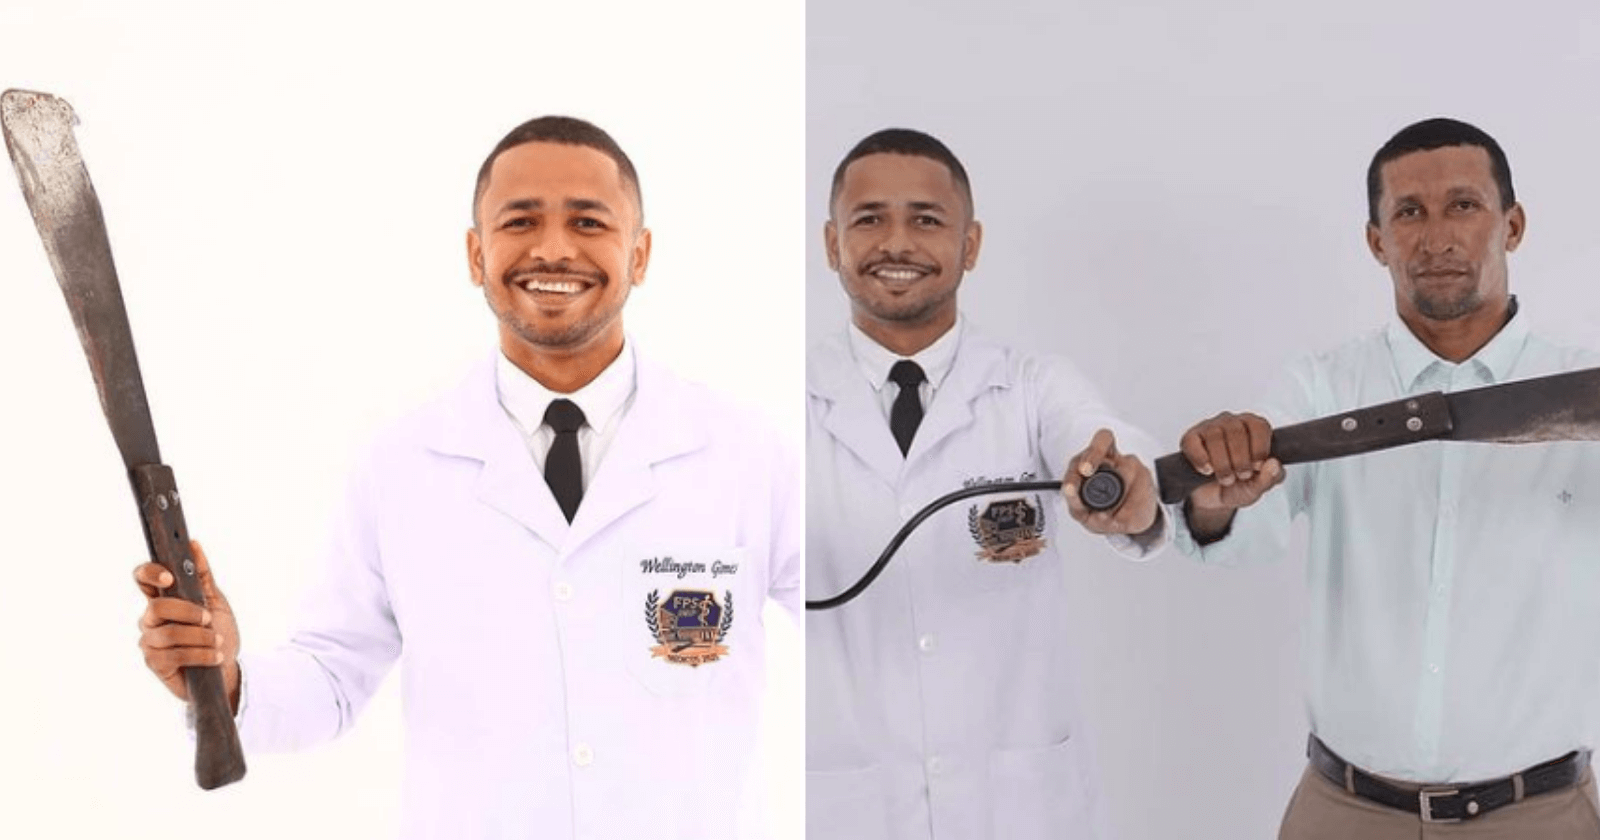 INSPIRADOR: Ex-cortador de cana realiza sonho e se torna médico